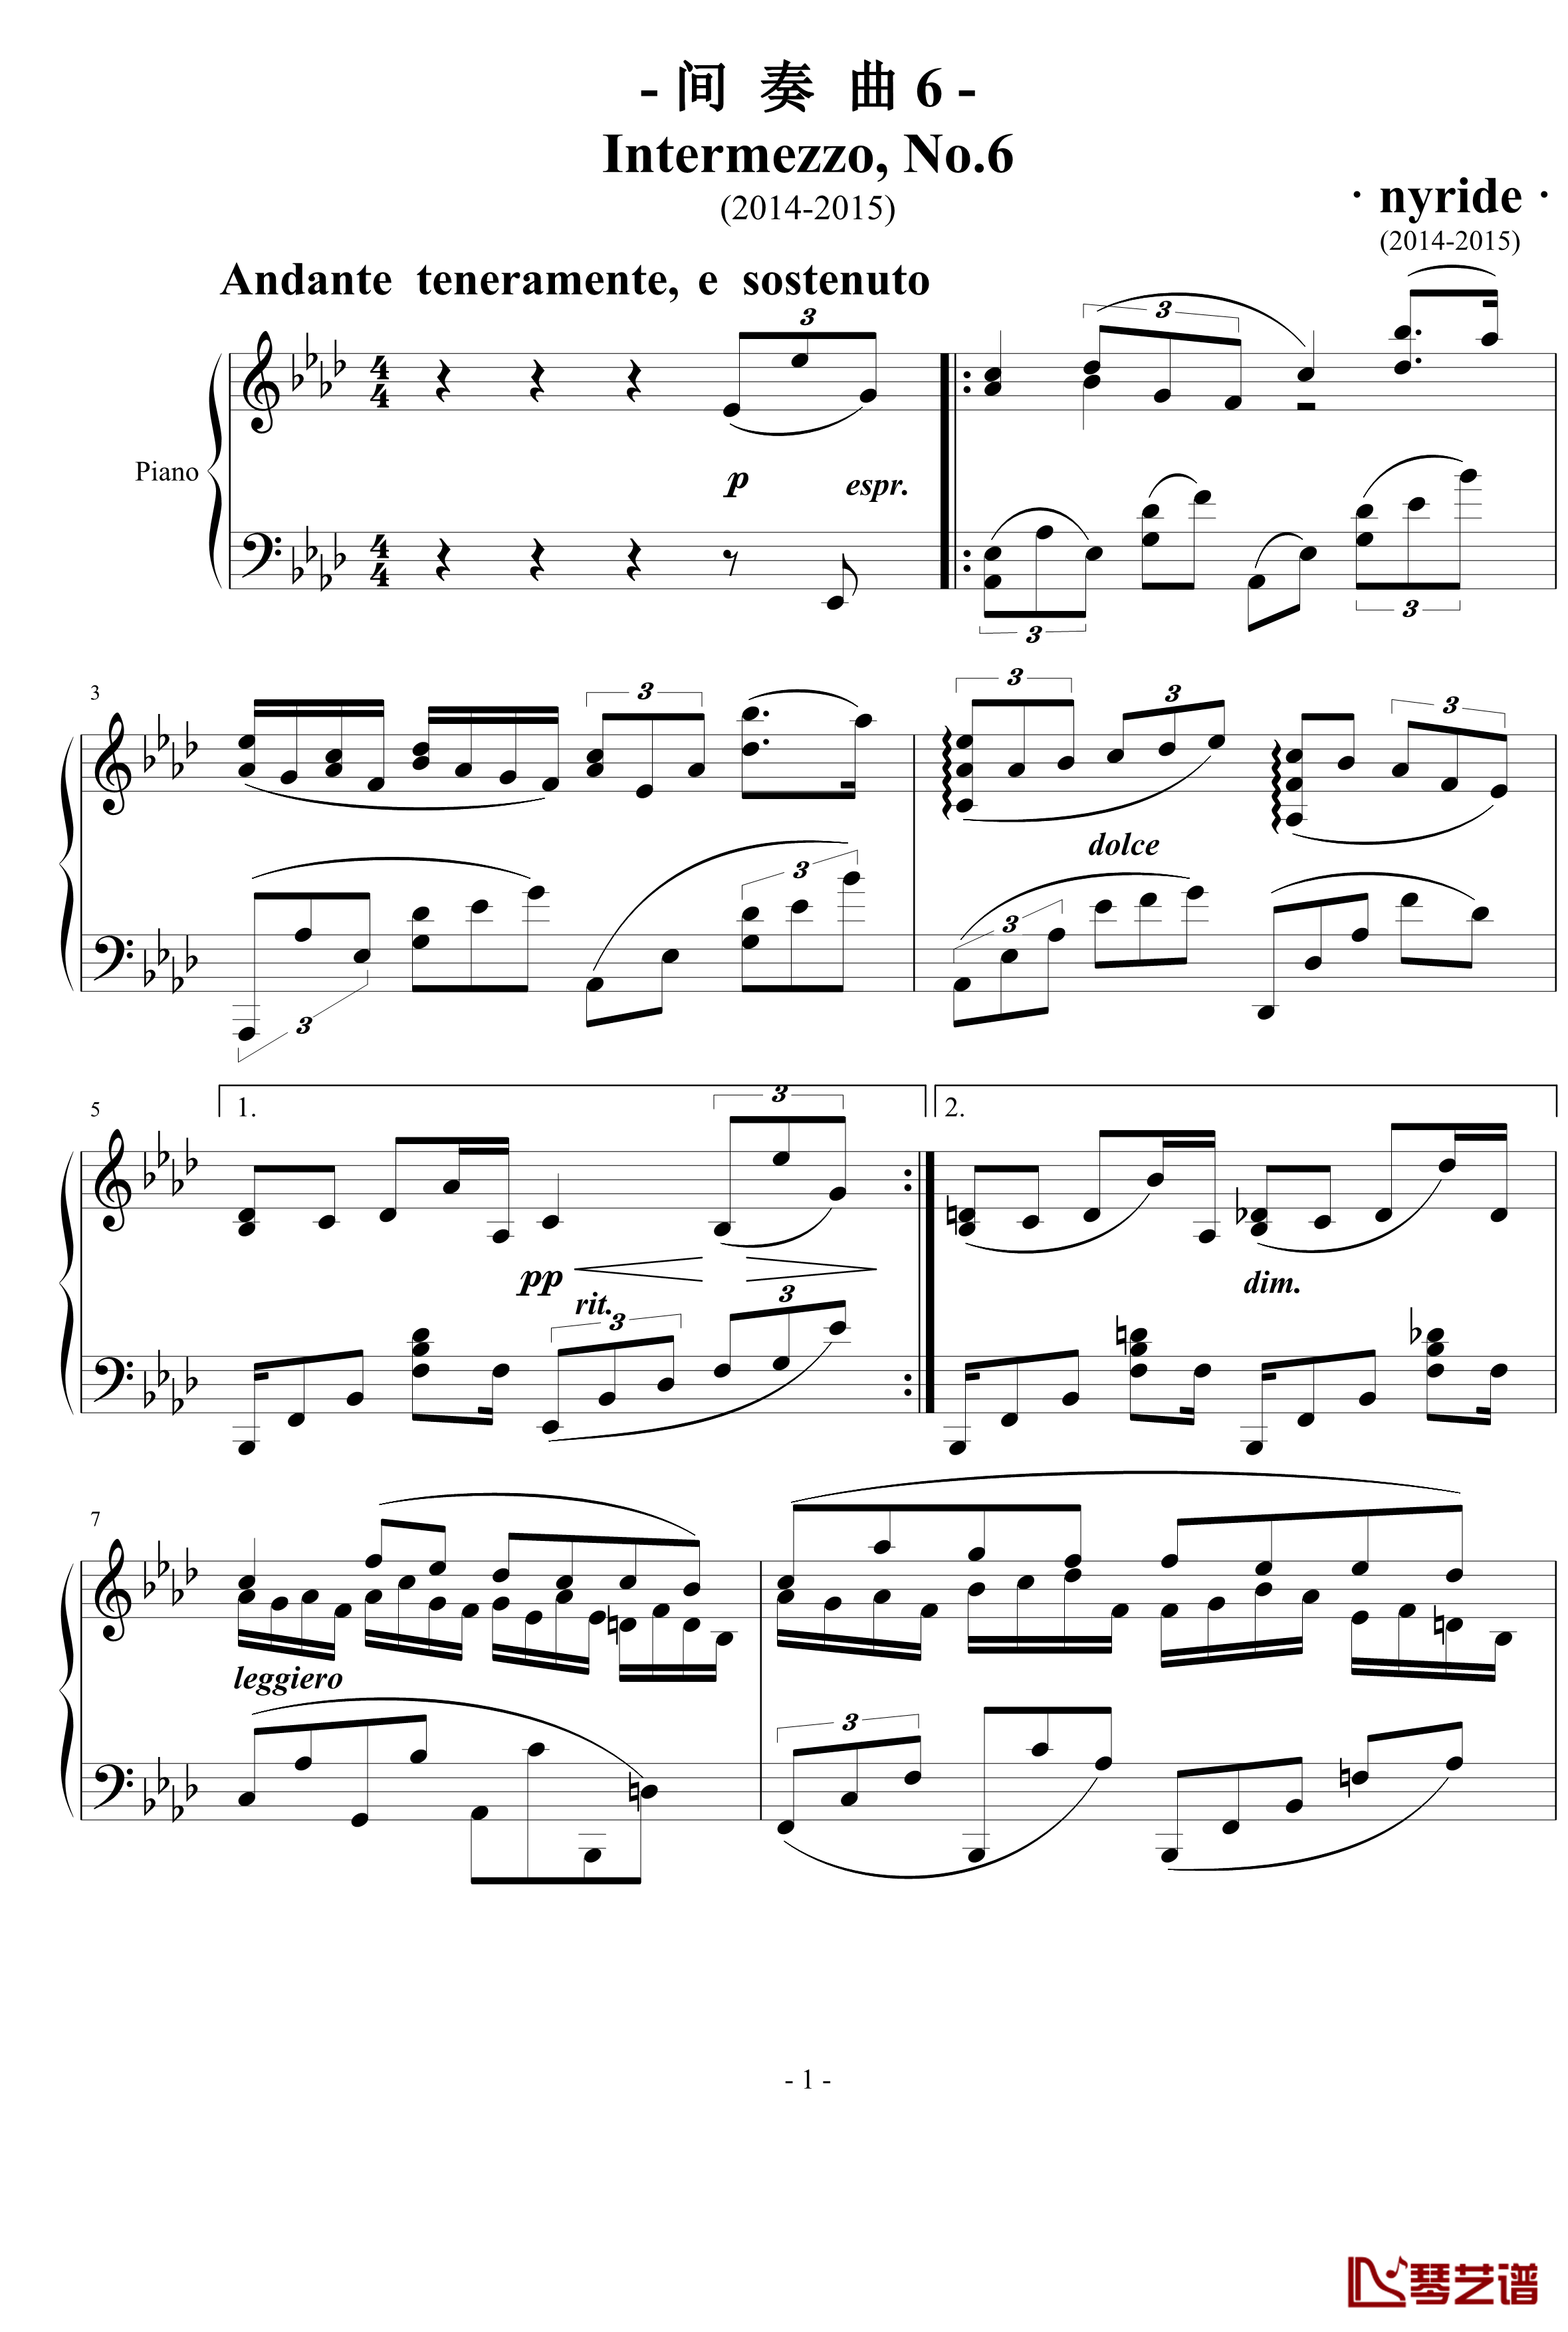 间奏曲6 Intermezzo No.6钢琴谱-nyride1